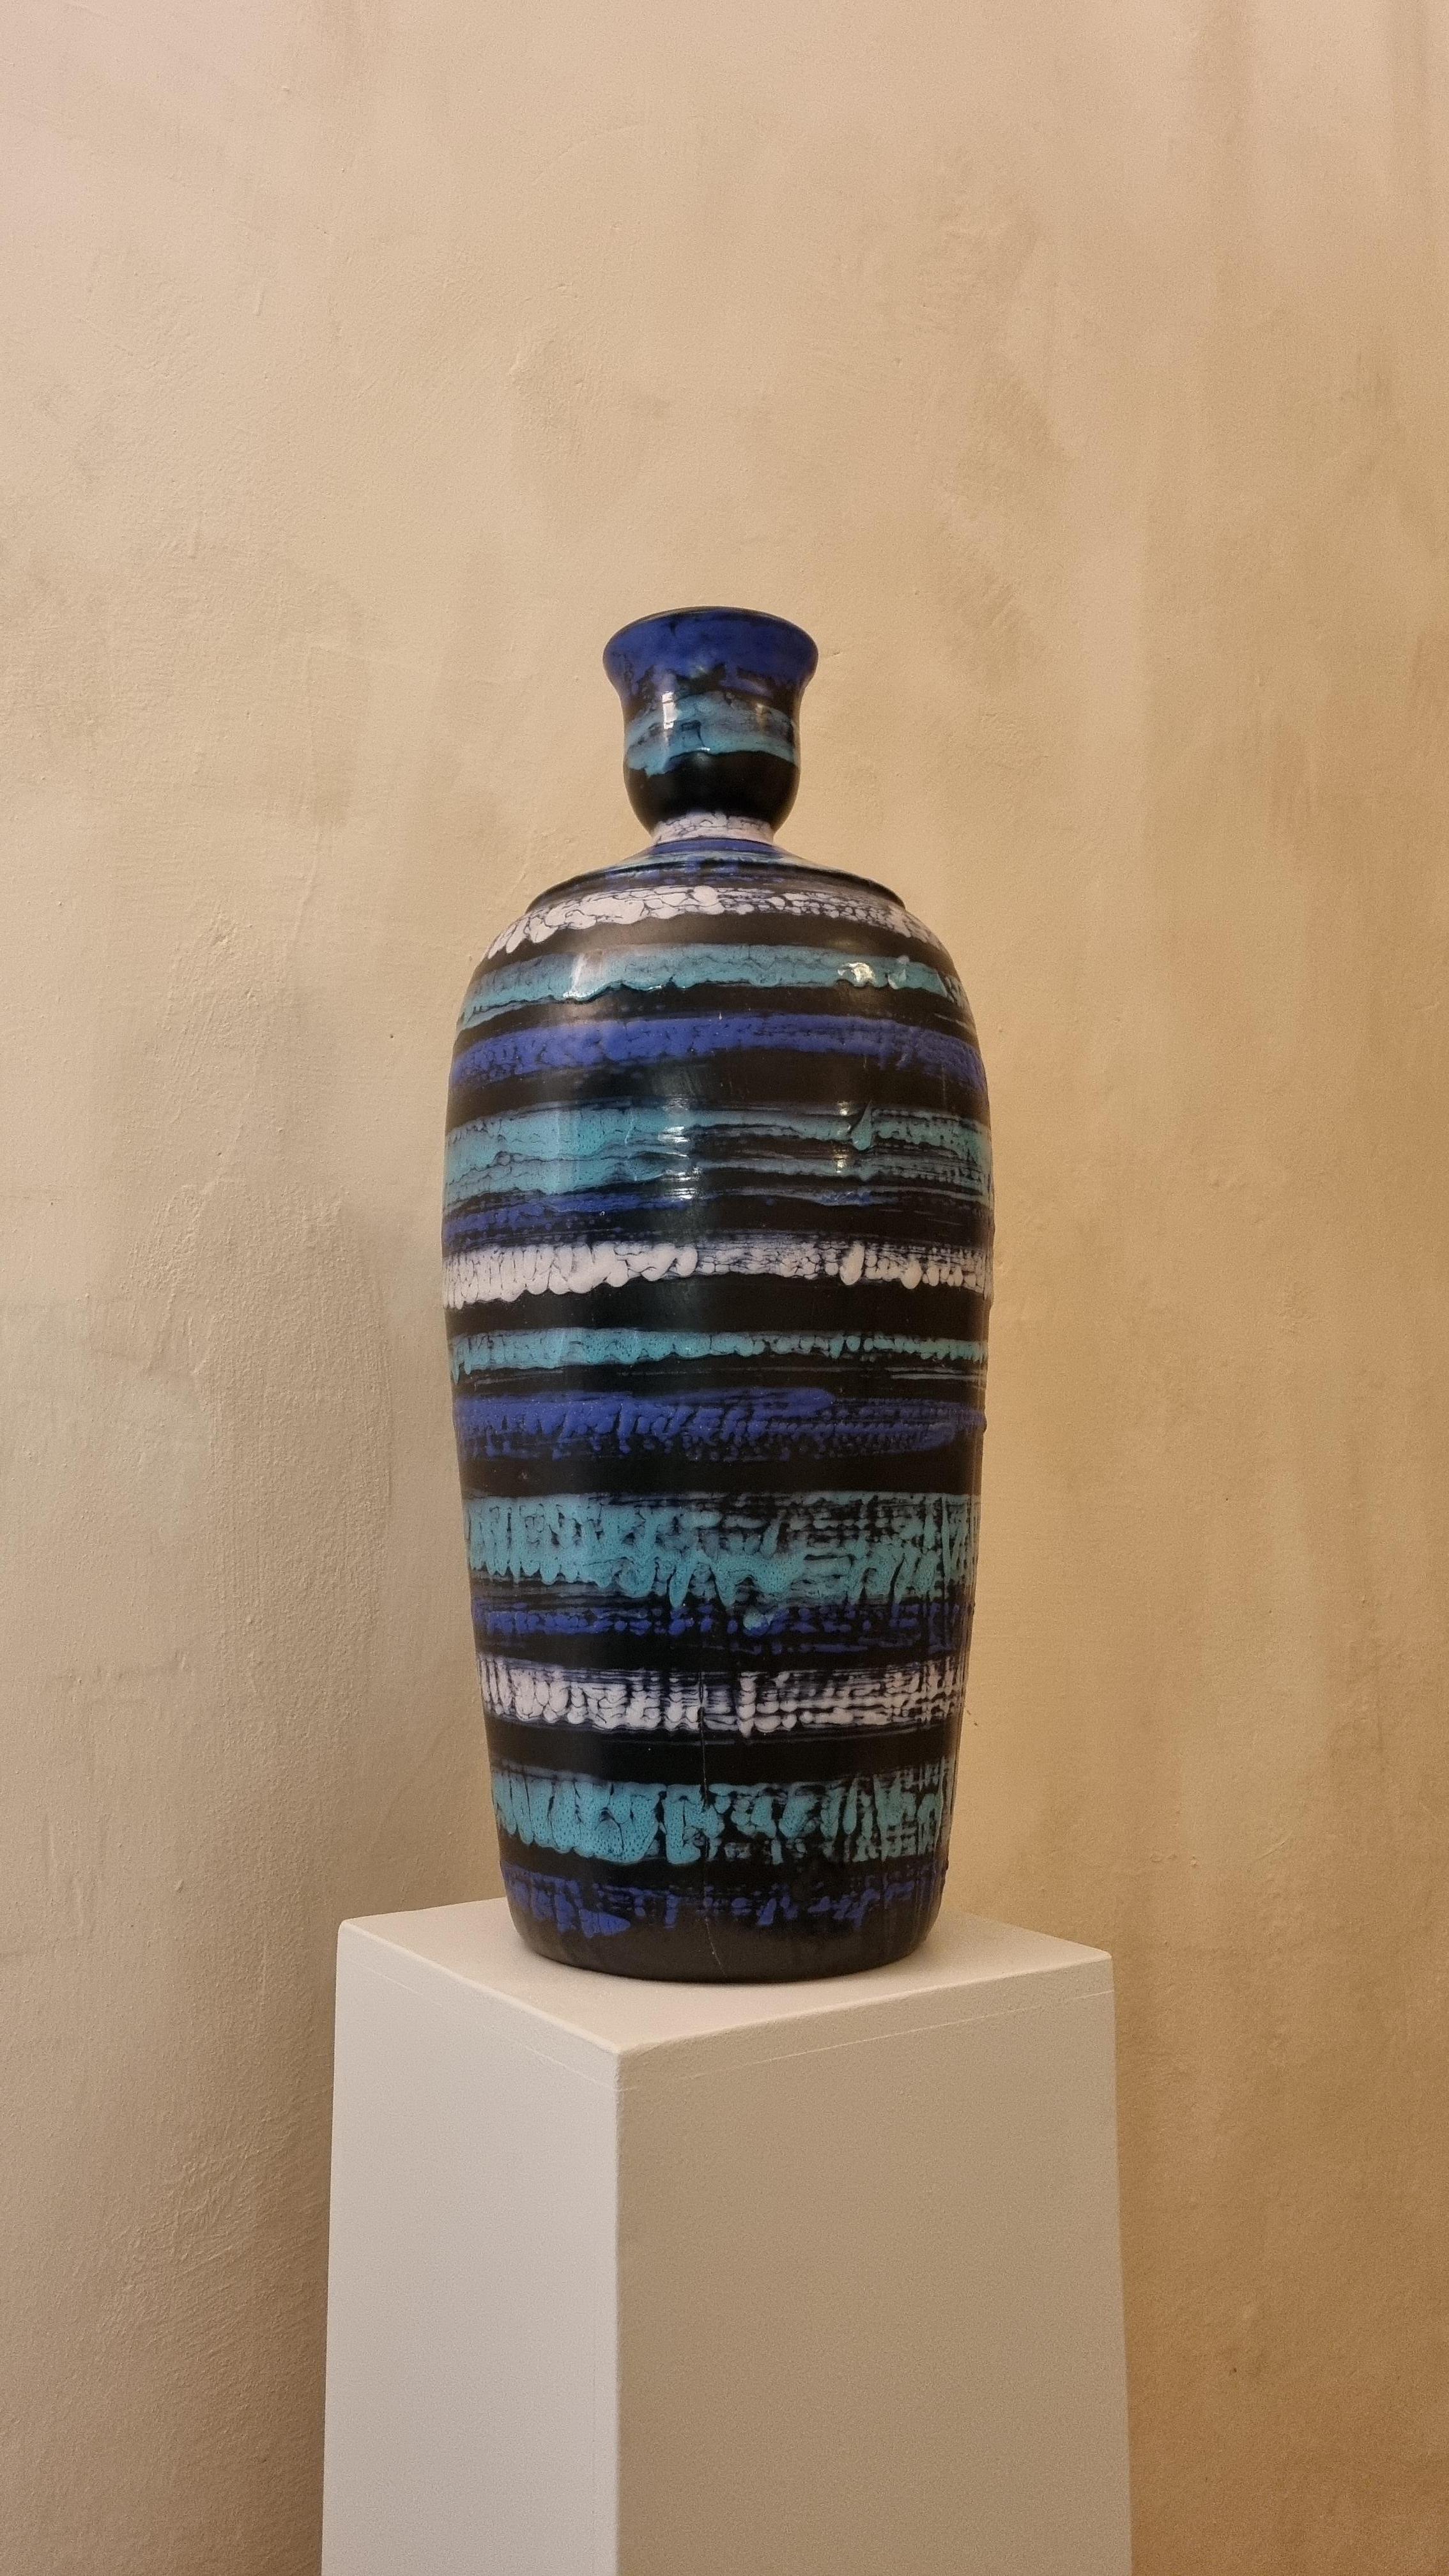 Großer Lampenhalter aus Keramik von Aldo Londi für Ceramiche Bitossi Montelupo, 1970 .
Keramik glasiert, handbemalt, signiert.
Dieses seltene Modell  wurde in einer limitierten Serie von  stücke,
Jedes von Bitossi geschaffene Werk folgt einem sehr